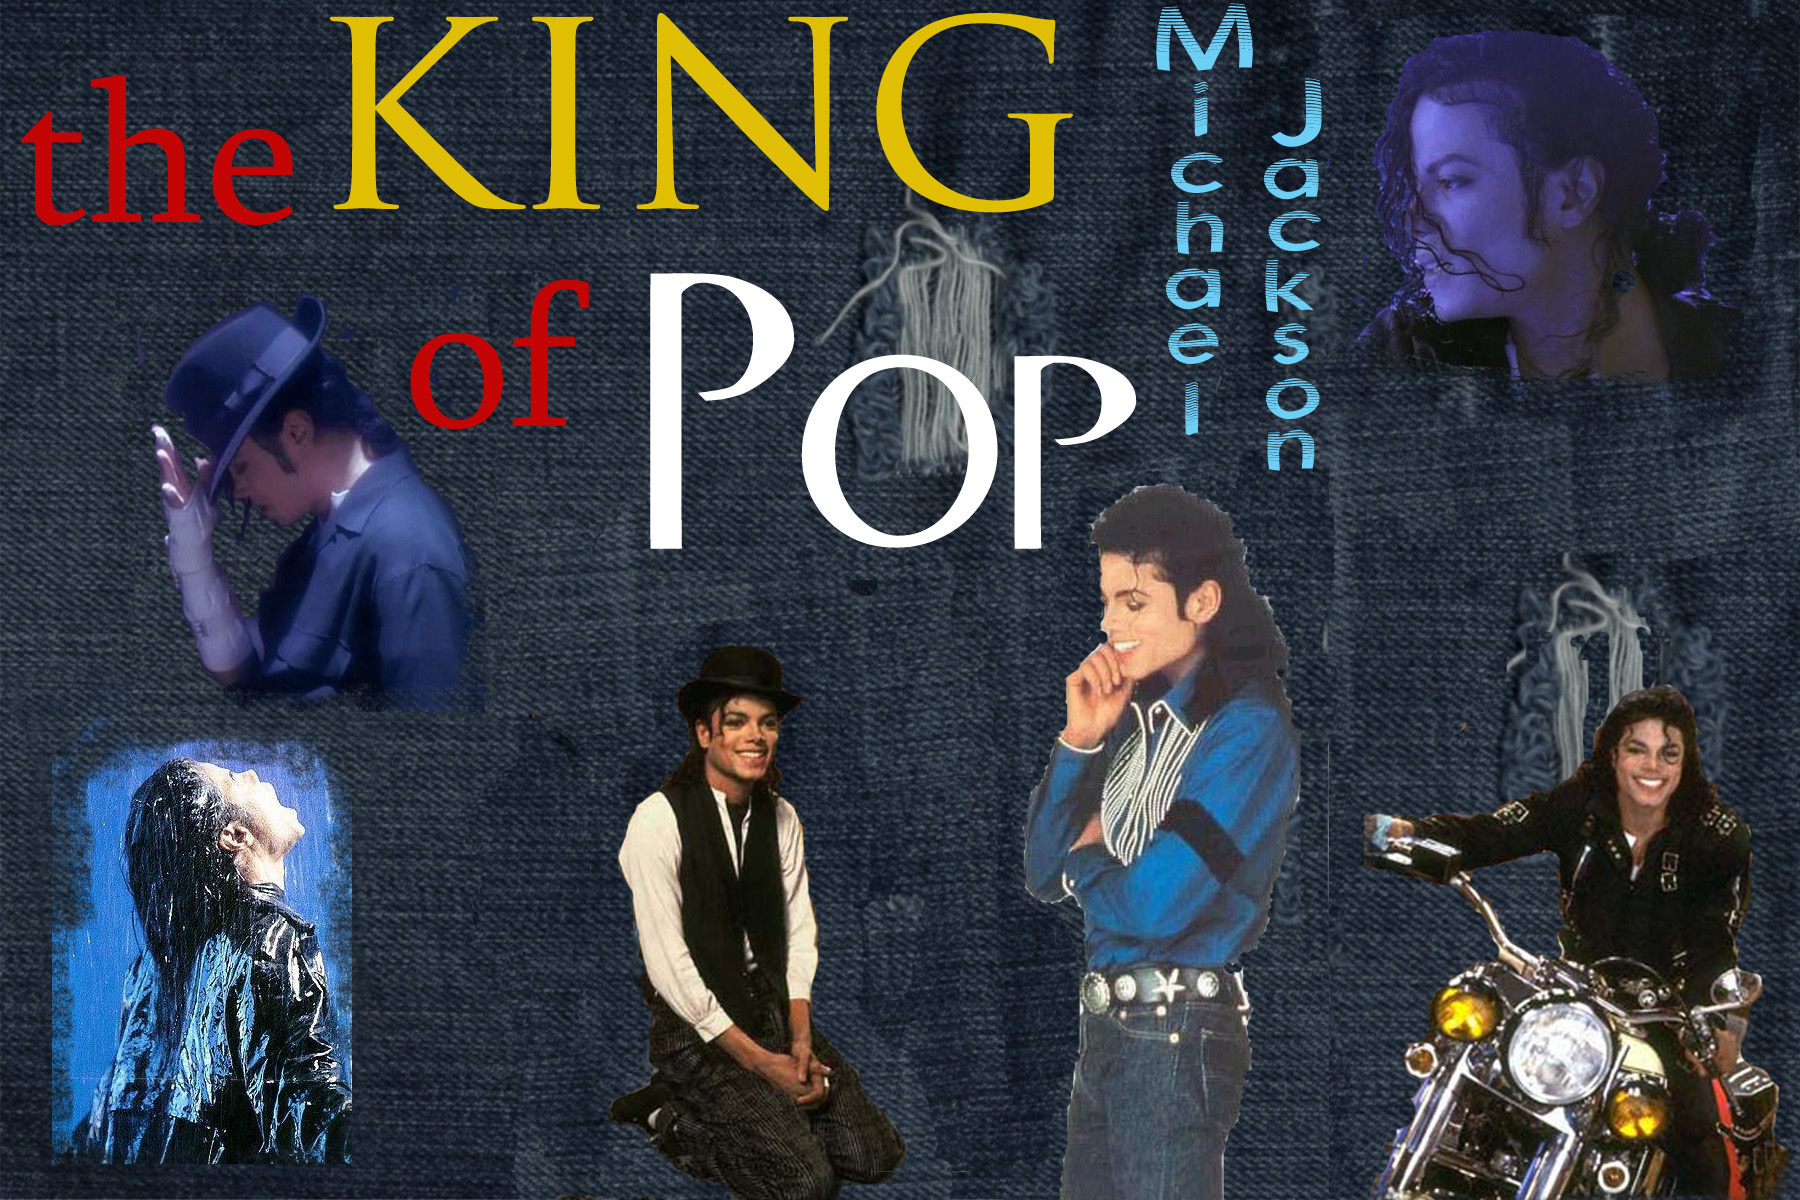 MJ Wallpaper Michael Jackson Photo